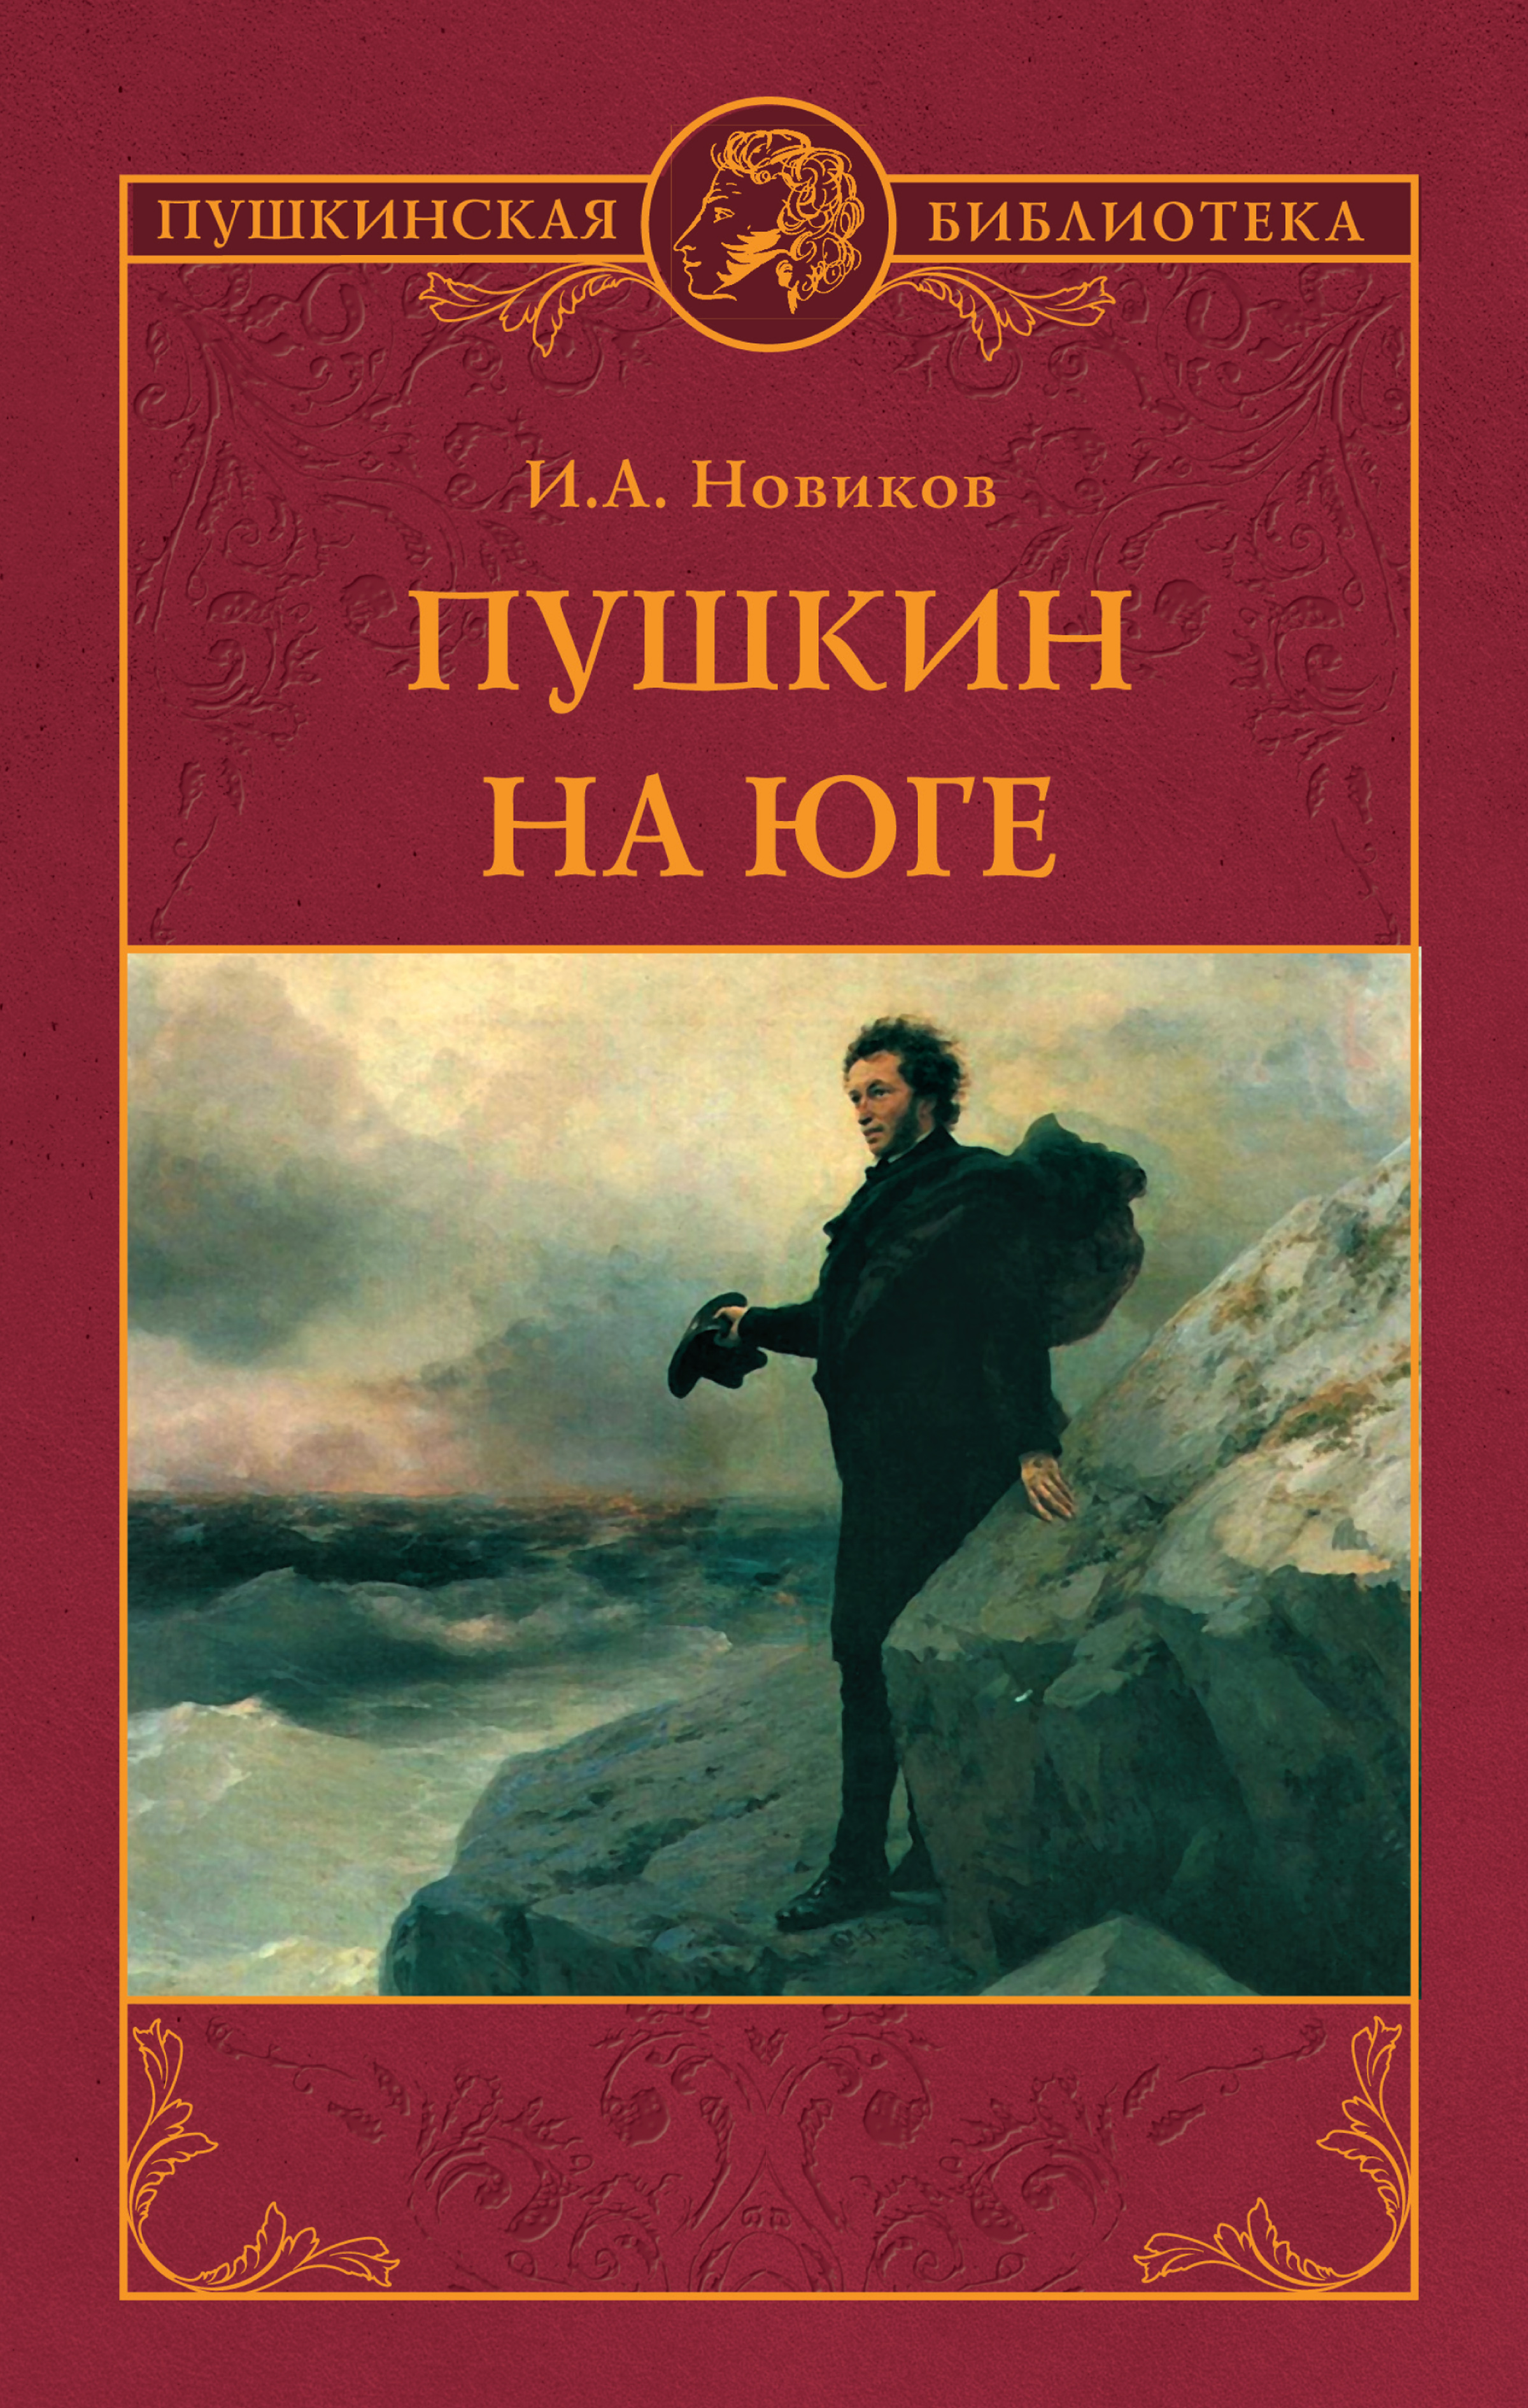 Книга Пушкин на юге из серии , созданная Иван Новиков, может относится к жанру Биографии и Мемуары, Историческая литература. Стоимость электронной книги Пушкин на юге с идентификатором 36084907 составляет 199.00 руб.